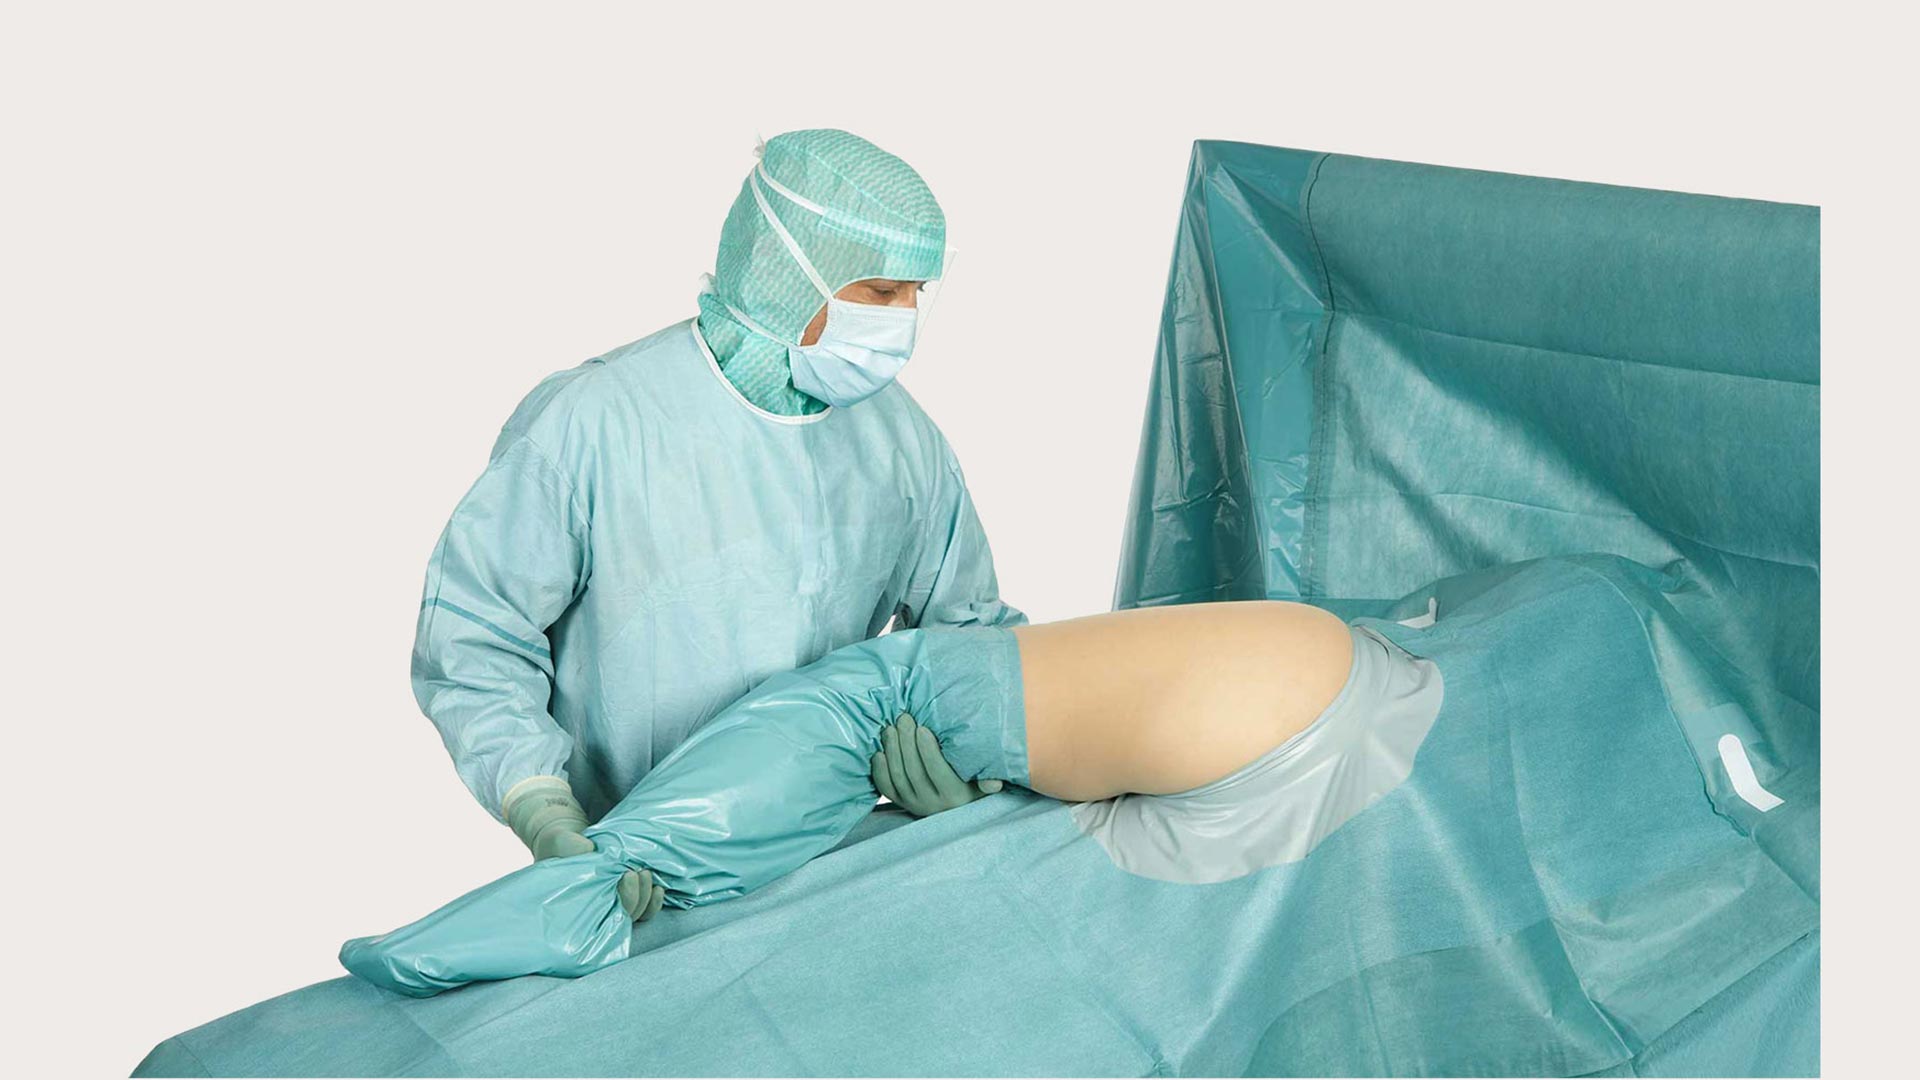 BARRIER 整形外科用ドレープ | メンリッケヘルスケア